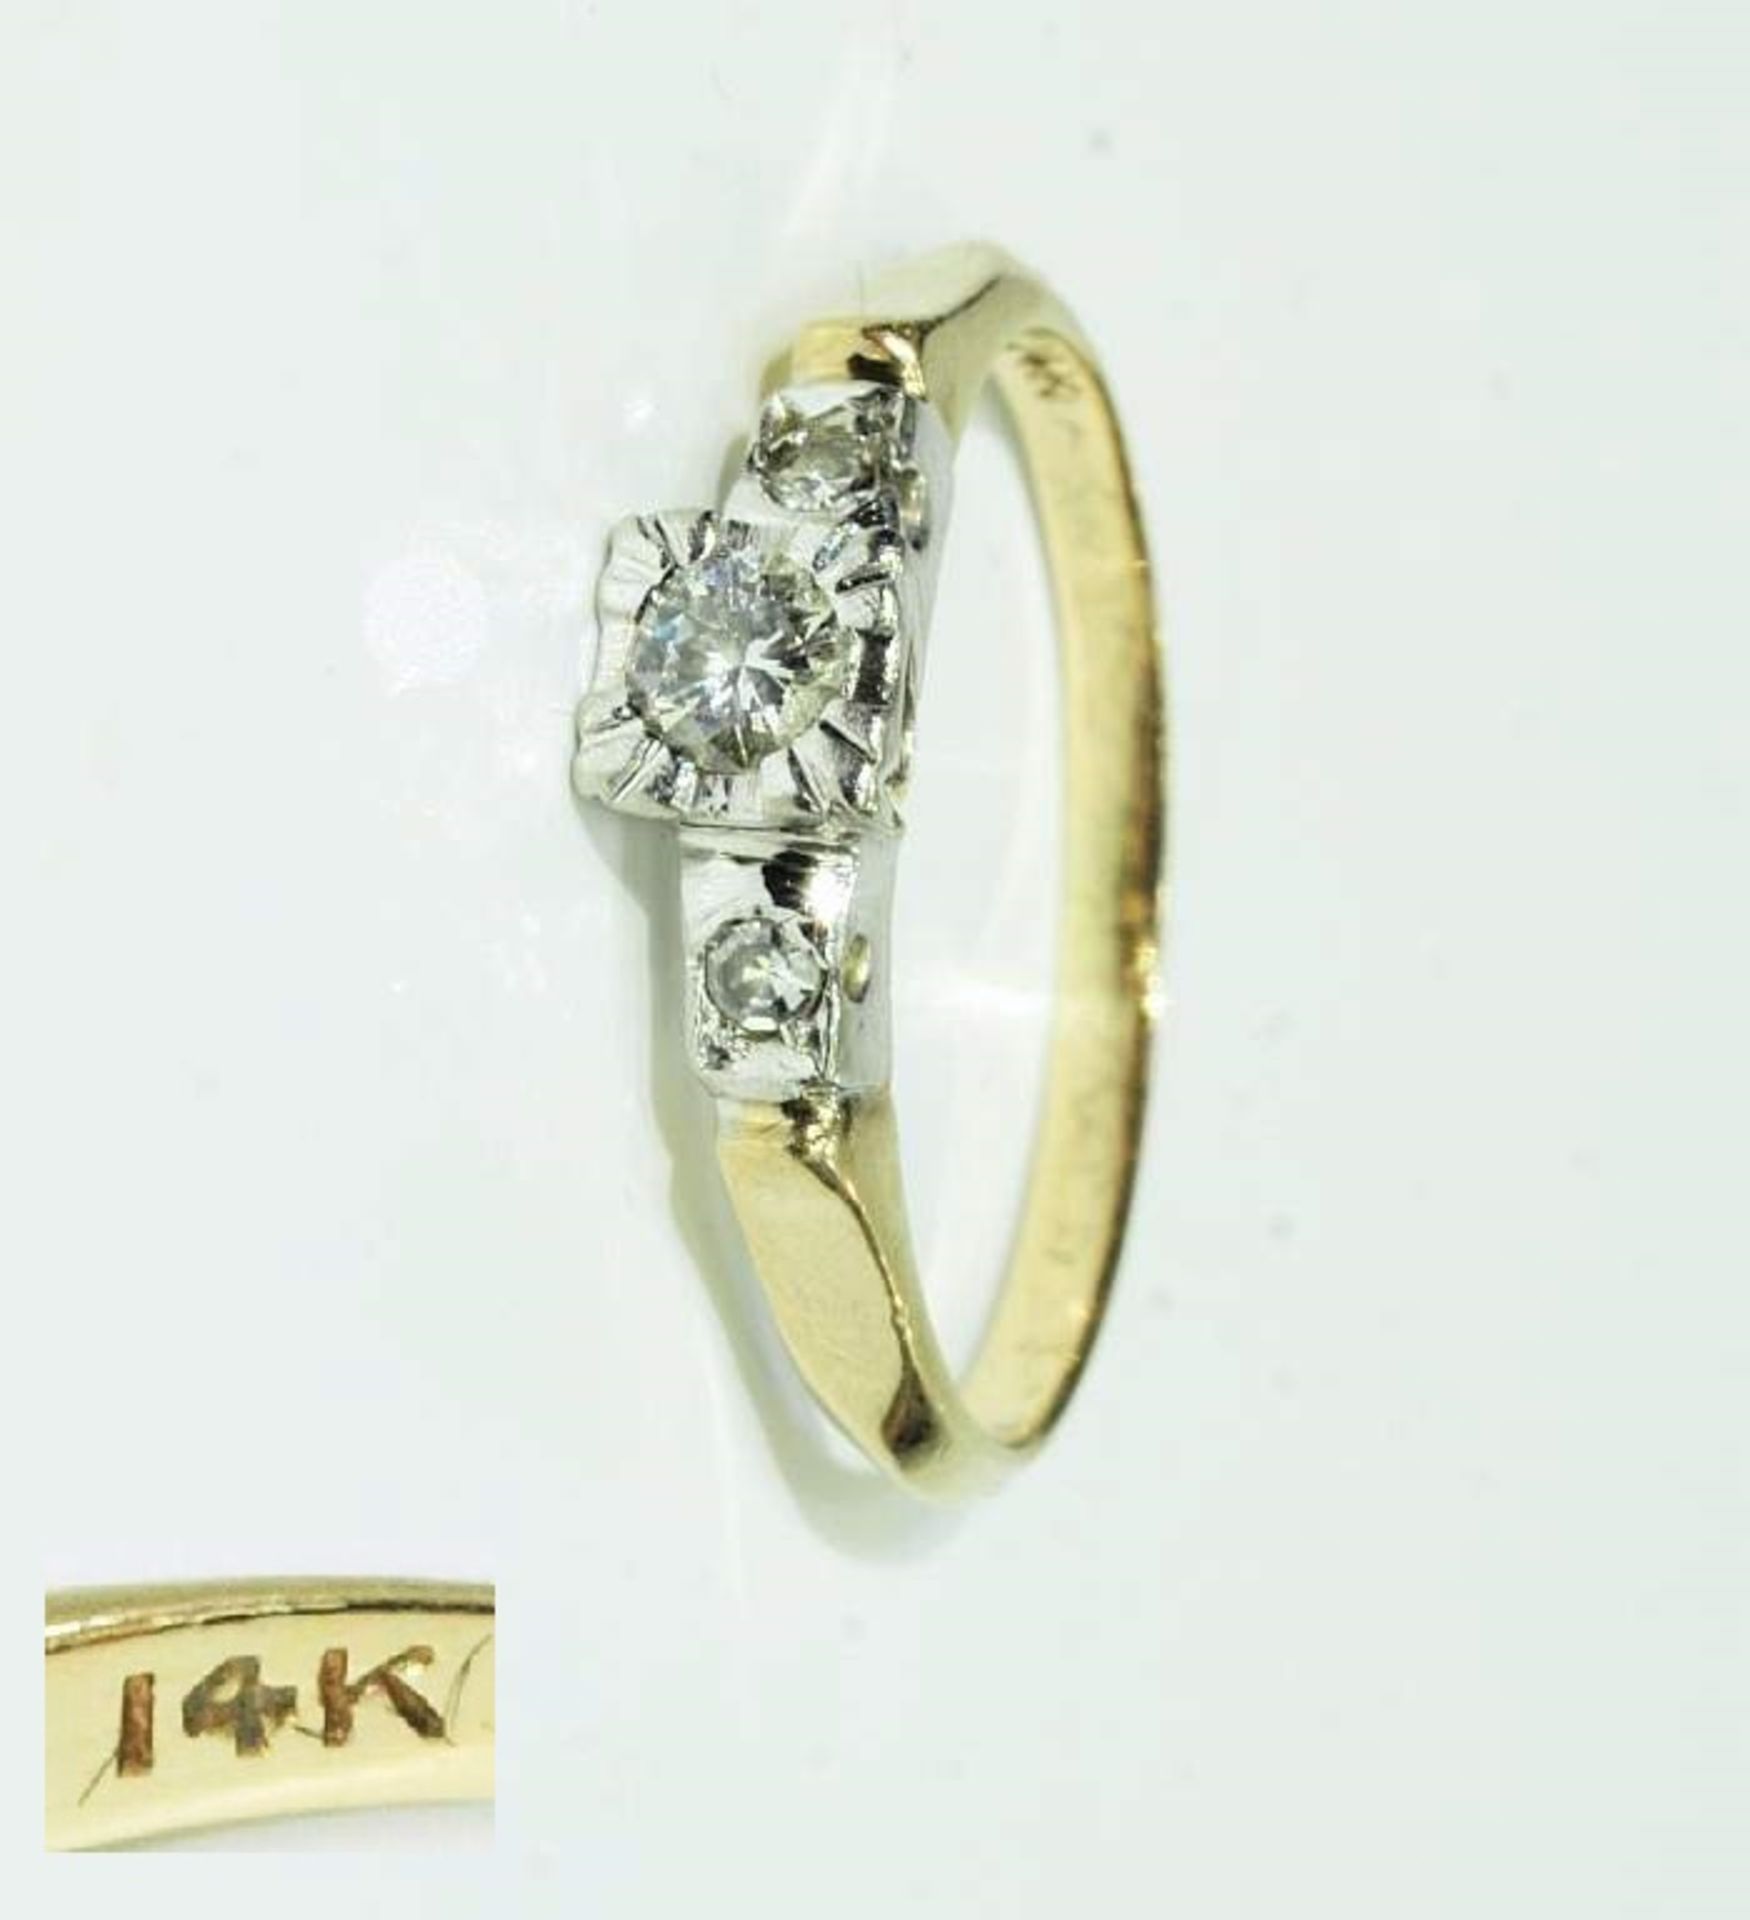 Brillant-Ring. Brillant-Ring. 585er Gelbgold. Mittig Brillant 0,12 ct. H/si-p1, flankiert von zwei